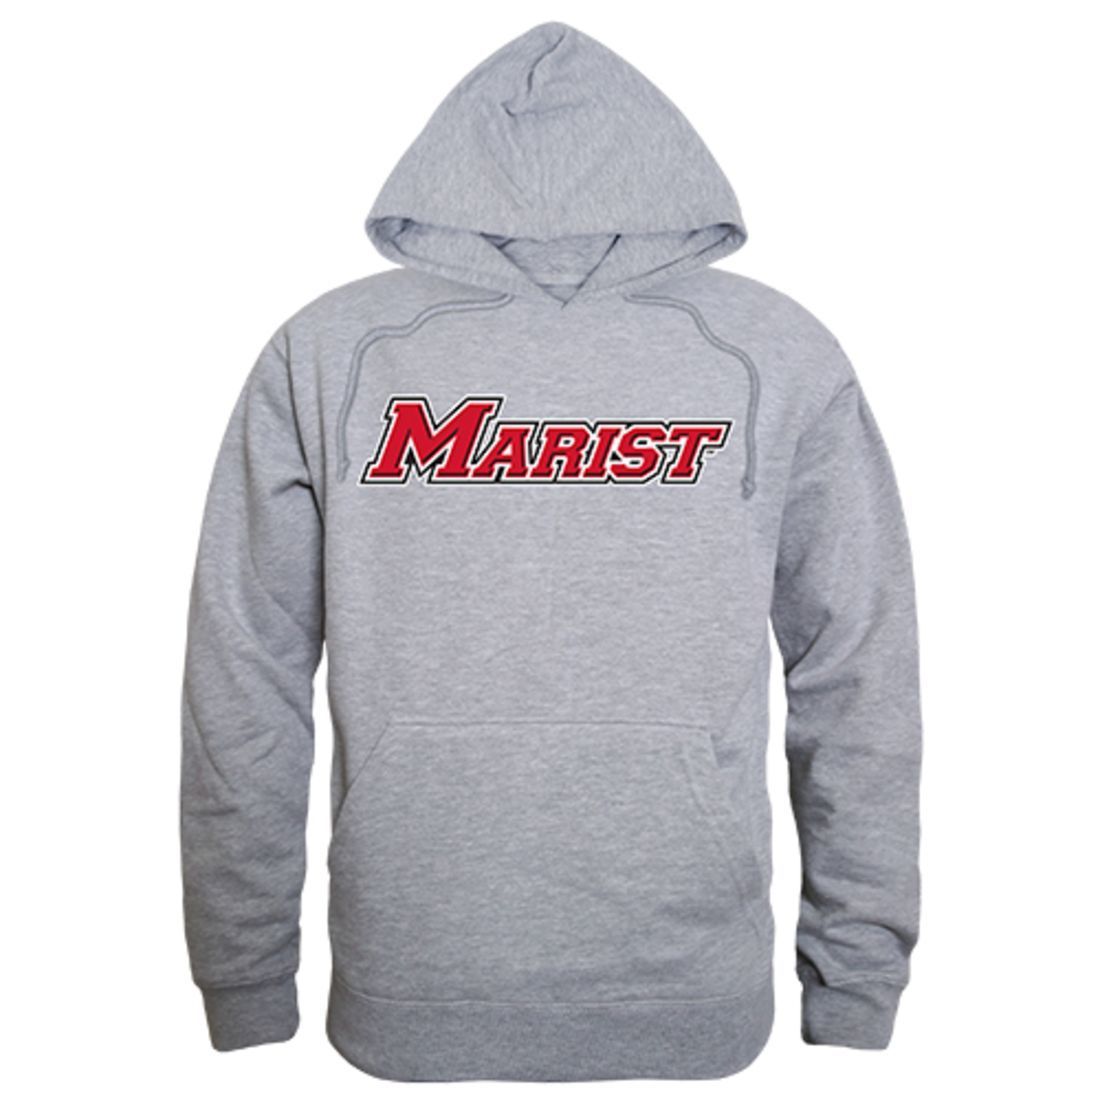 Marist College Game Day Hoodie Sweatshirt Heather Grey-Campus-Wardrobe